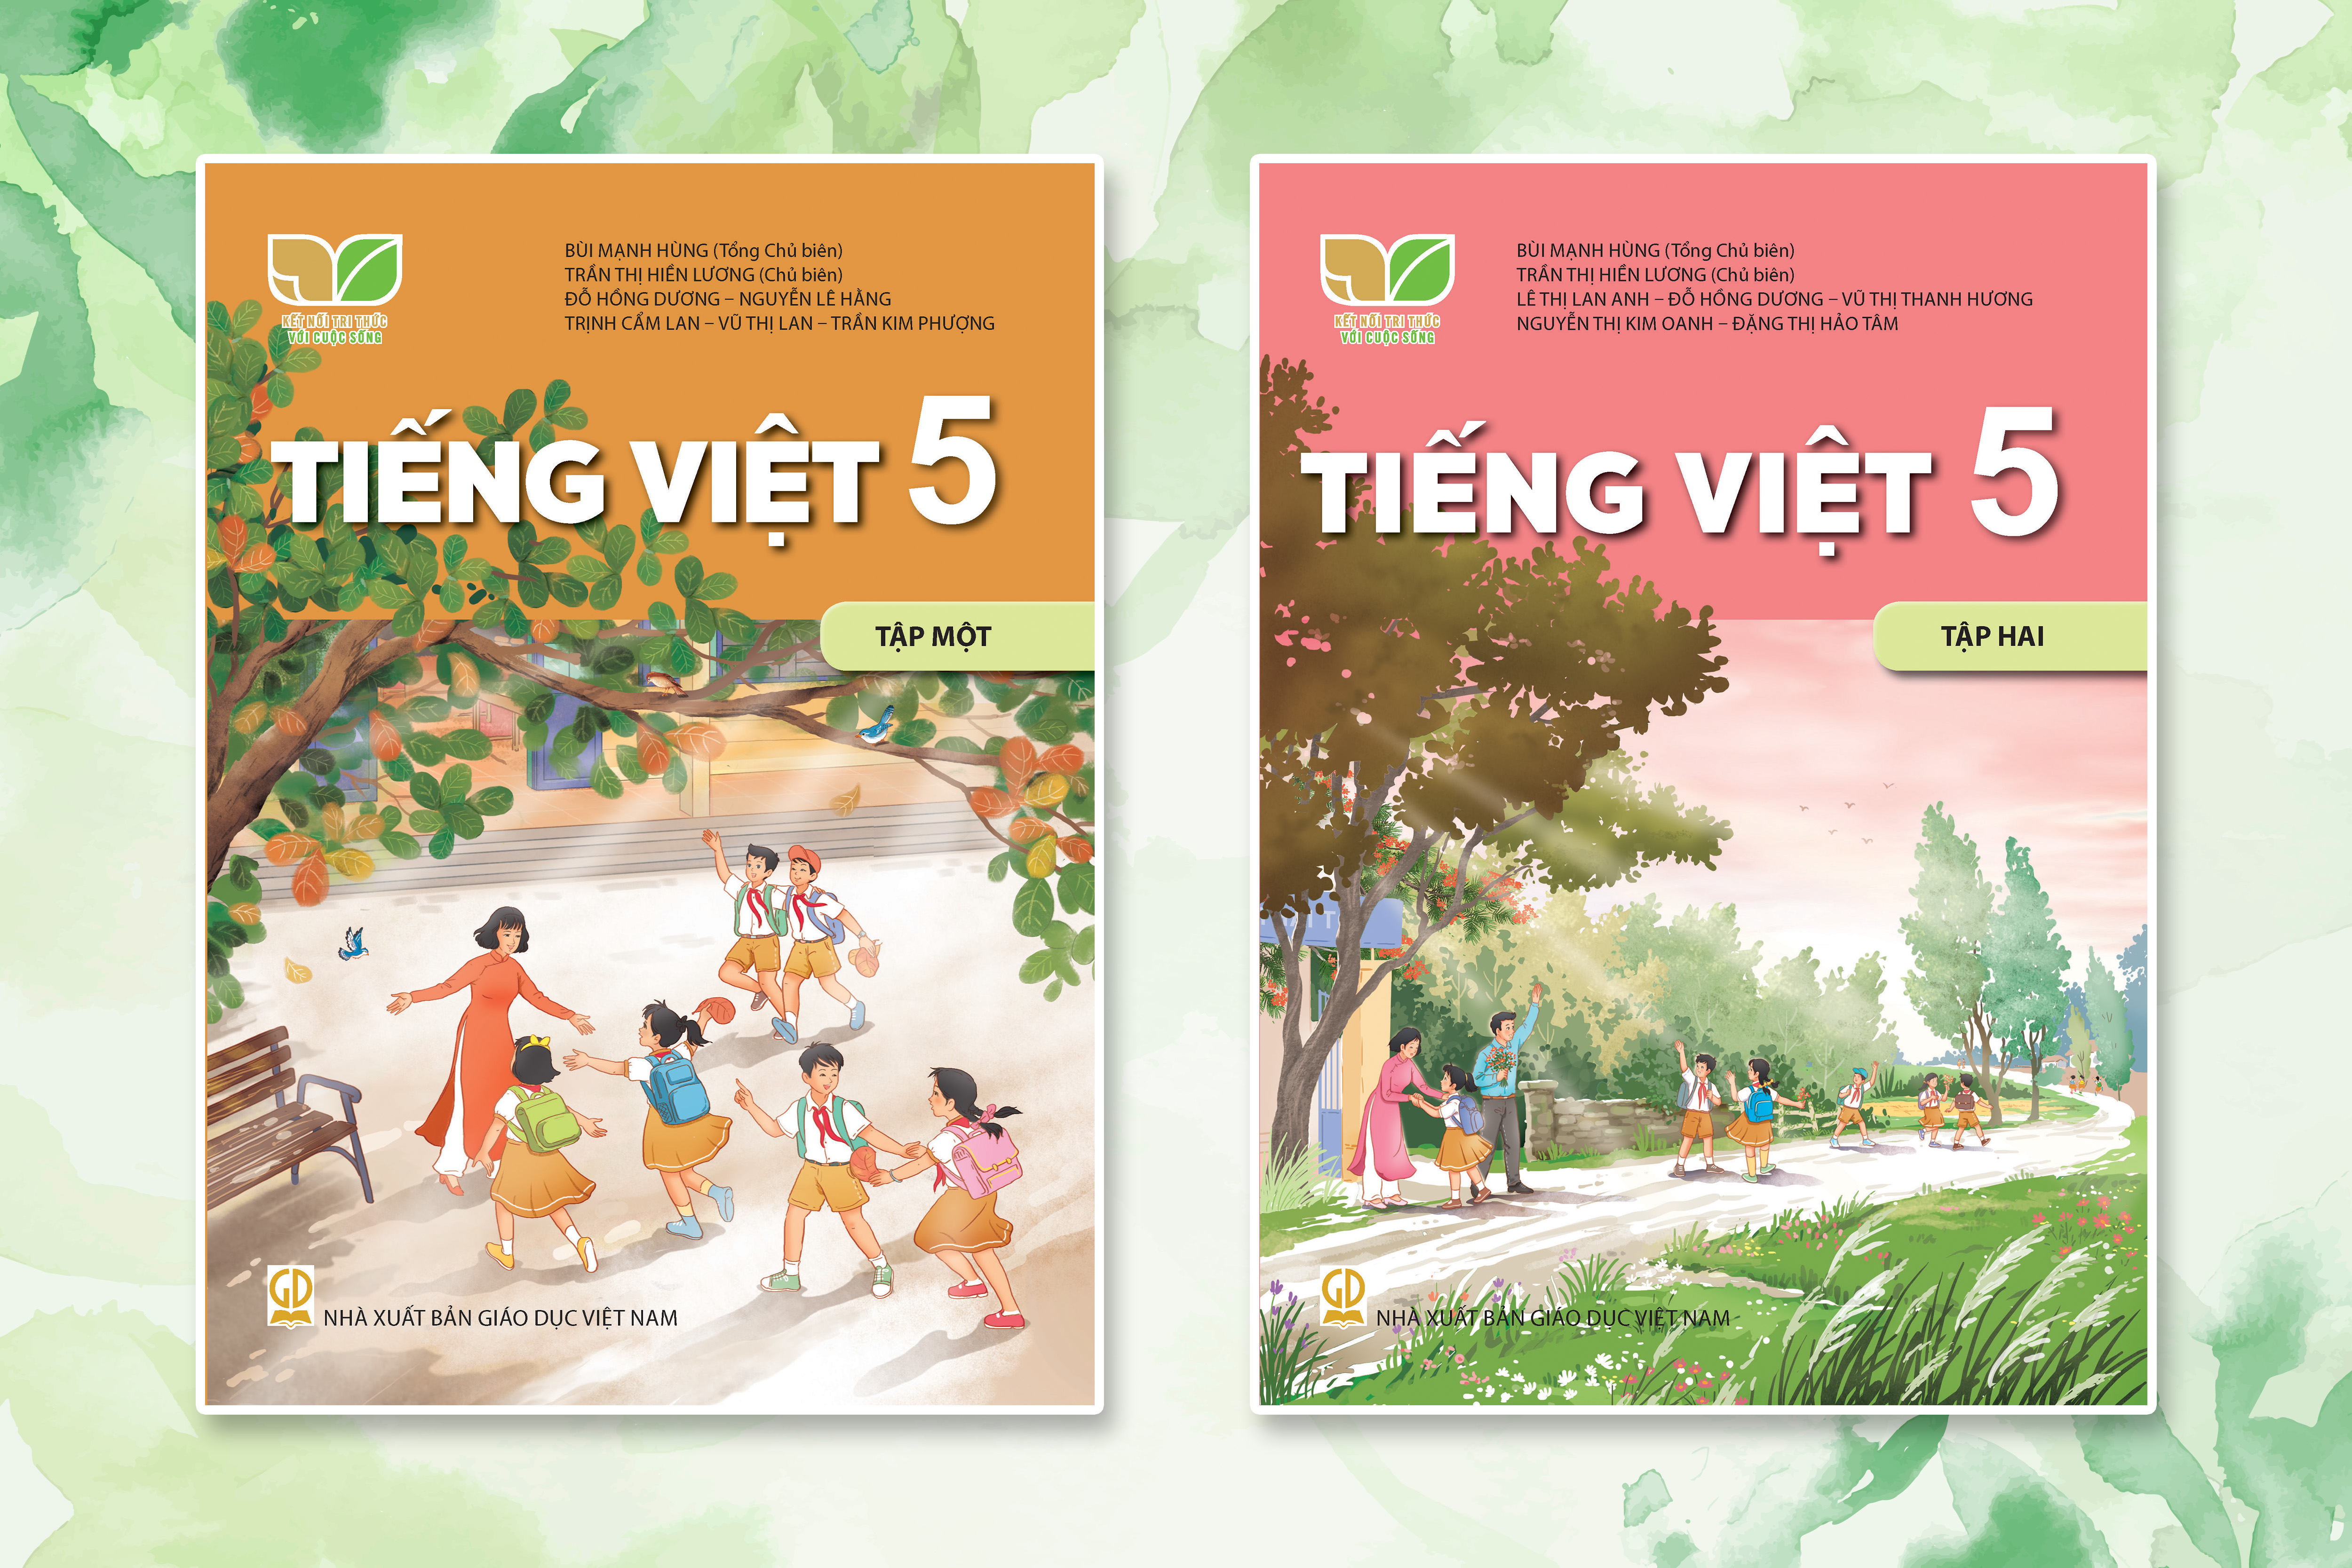 Điểm thú vị trong hoạt động nói và nghe ở SGK tiếng Việt lớp 5, bộ Kết nối tri thức với cuộc sống